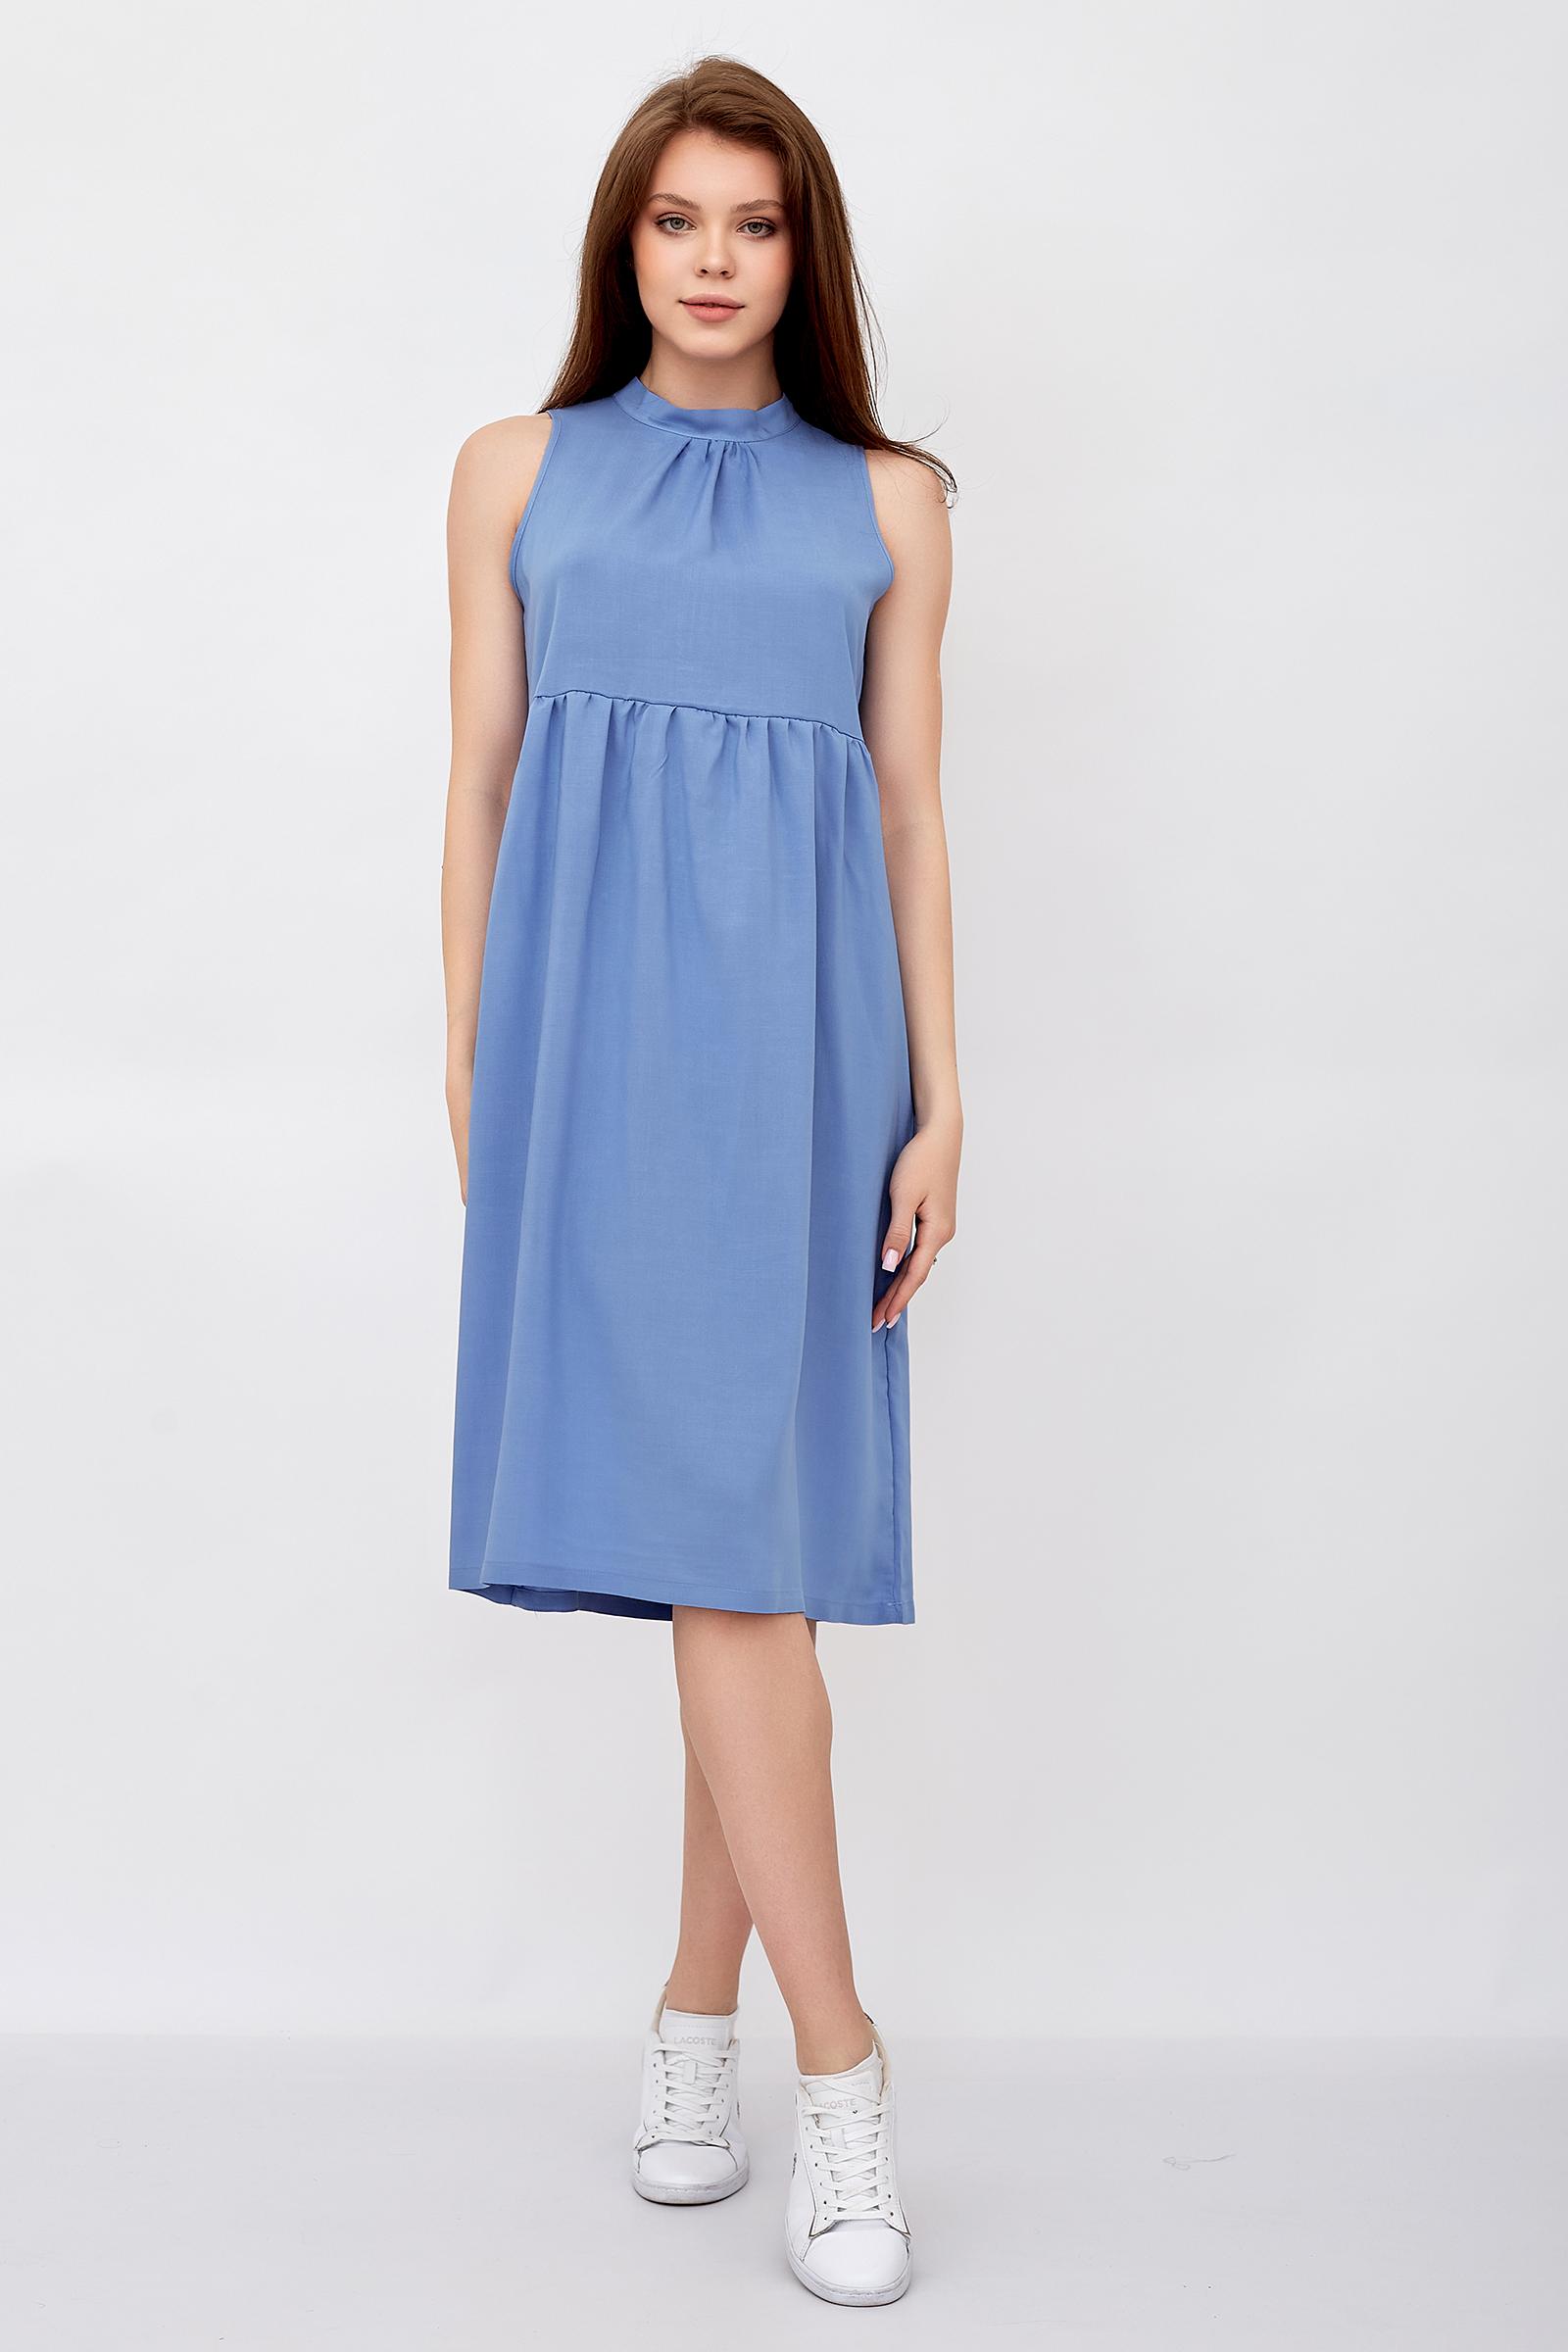 Платье женское LikaDress 18-1644 голубое 50 RU